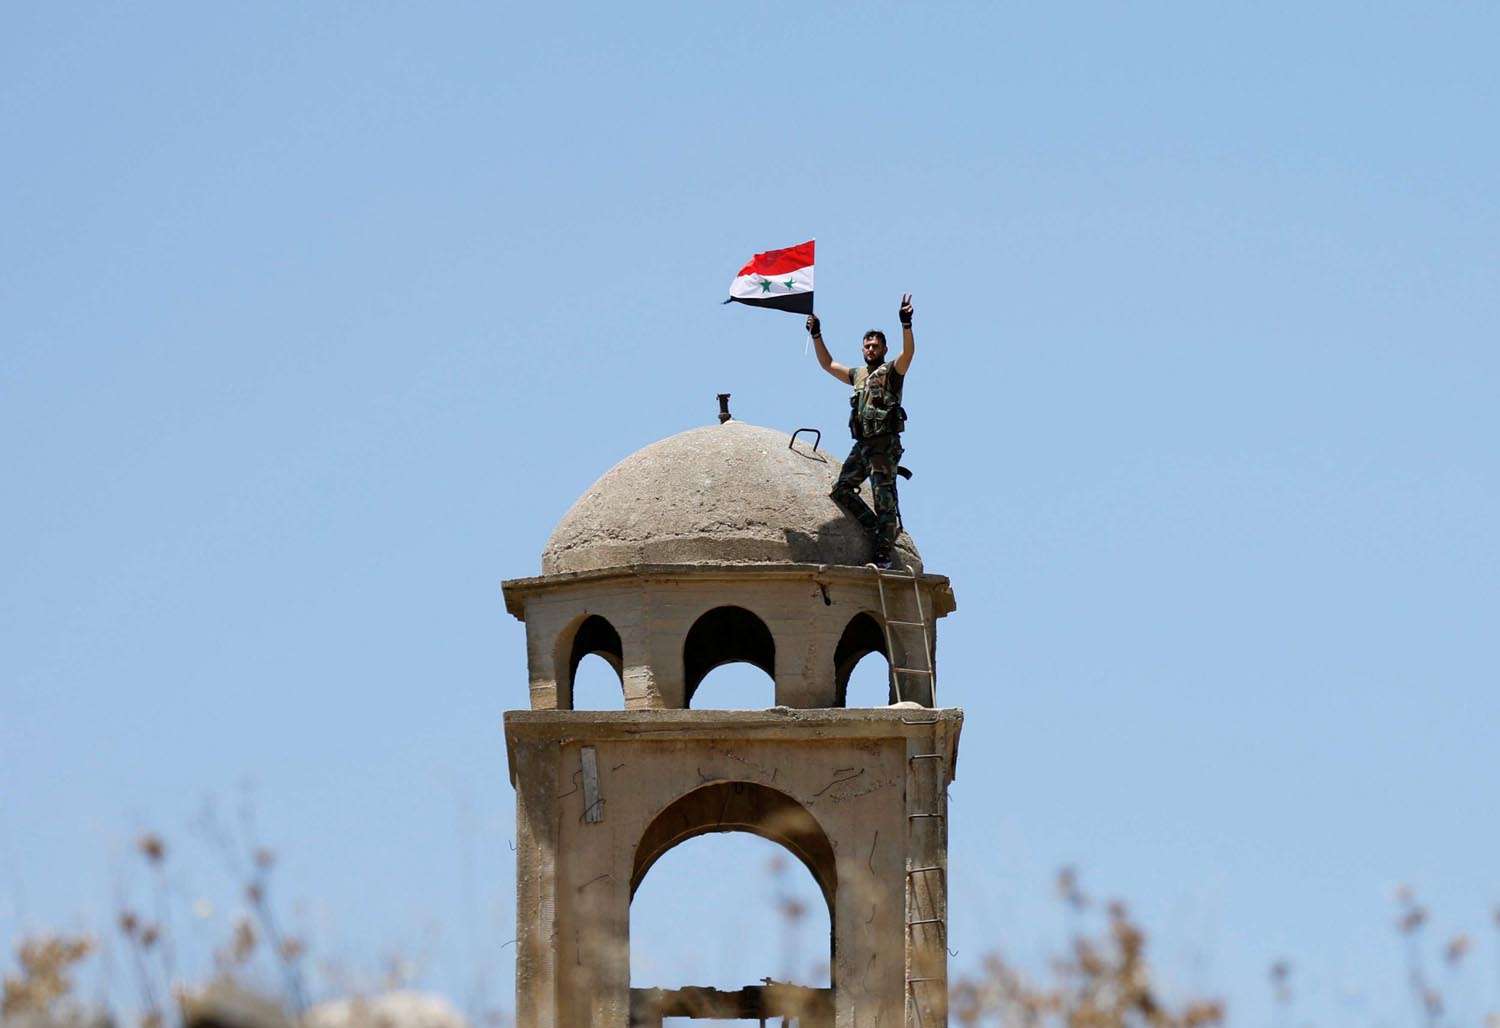 جندي سوري يرفع علم بلاده على كنيسة في مدينة القنيطرة